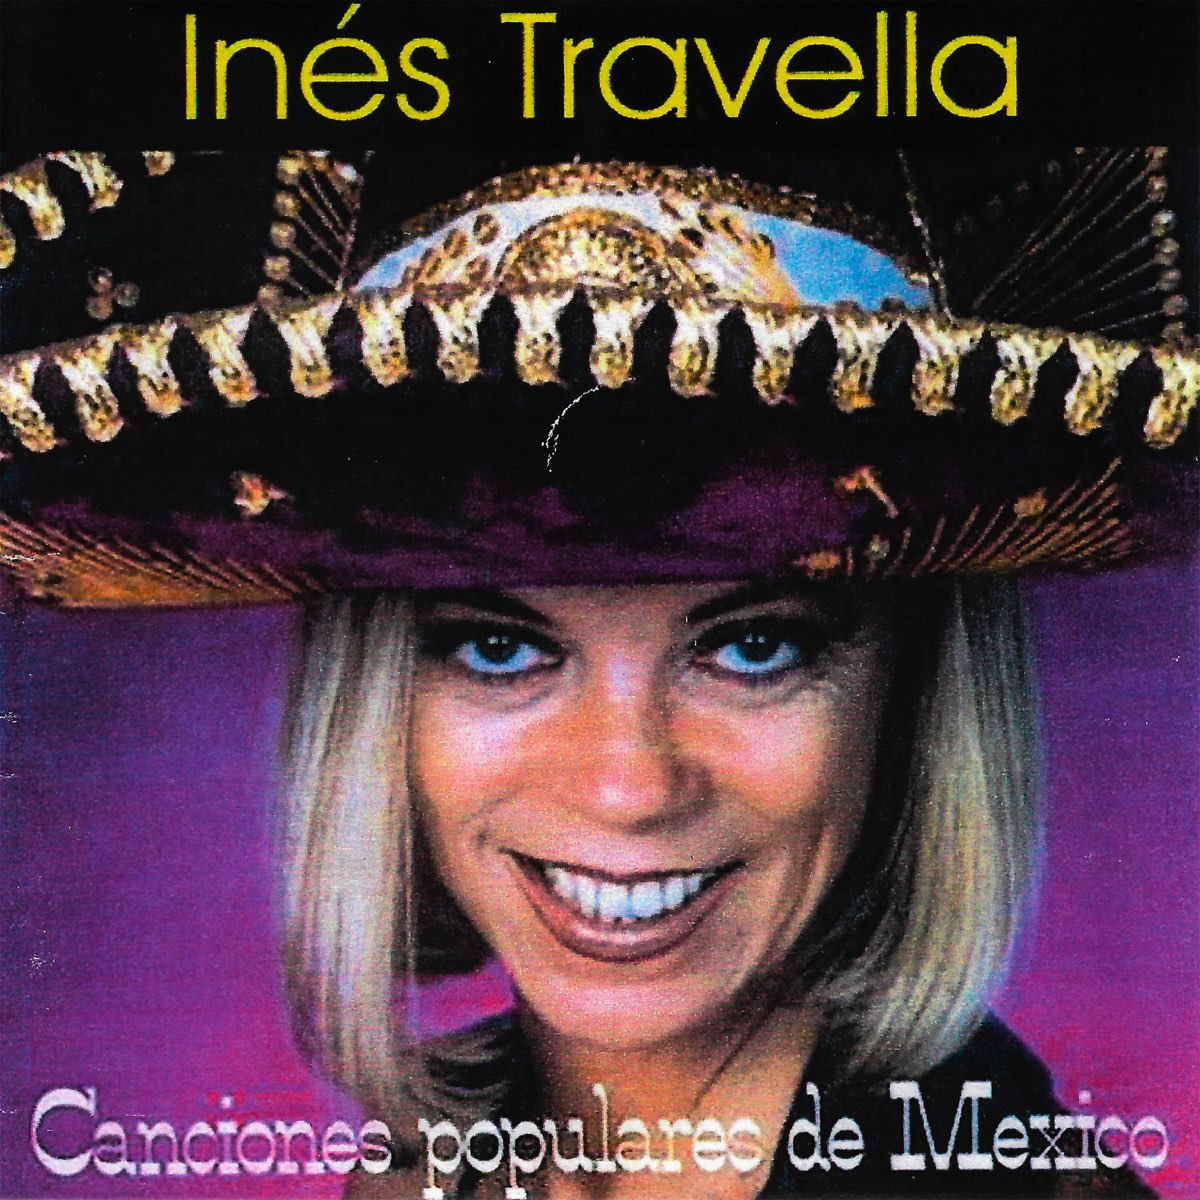 ‎Canciones Populares de México Album by Inés Travella Apple Music